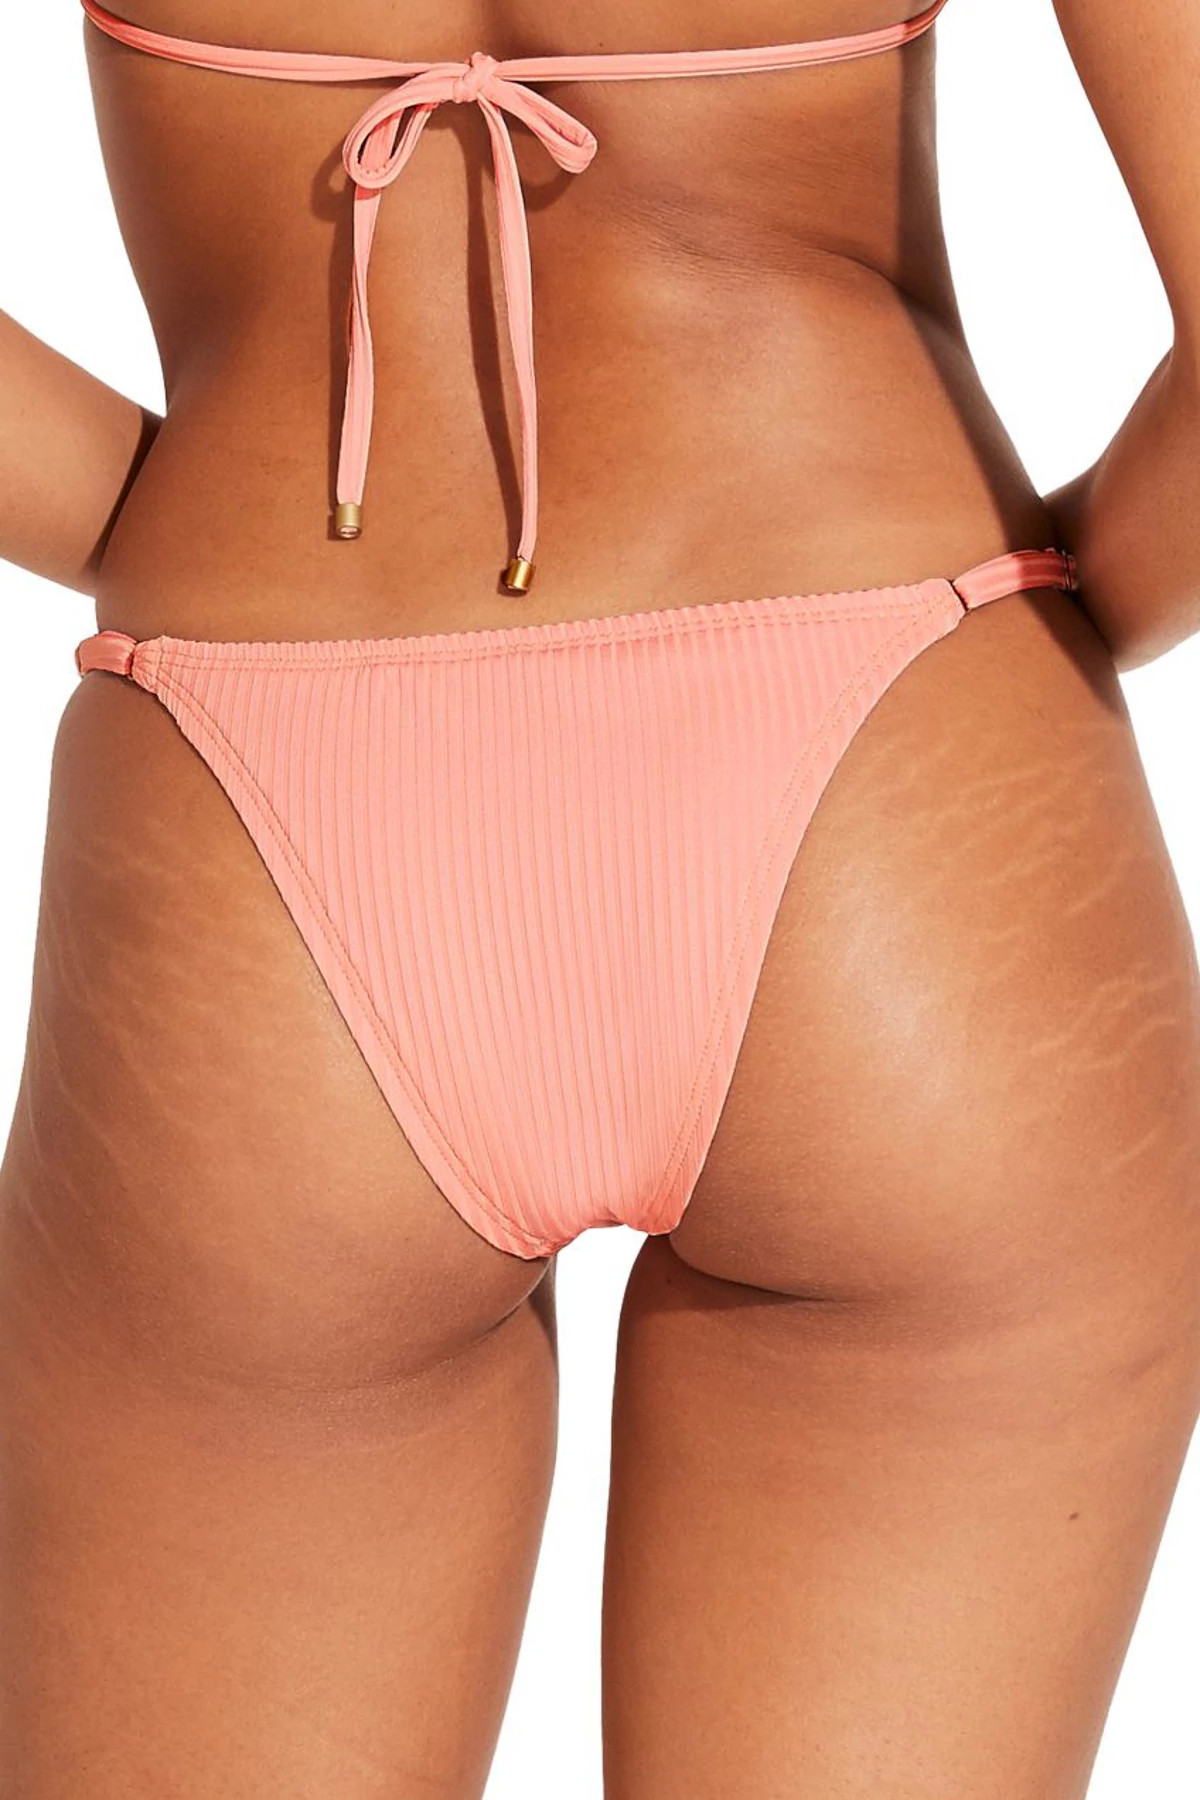 Vitamin A Gia Ring Tri Bikini Top - Pink Coral EcoRib